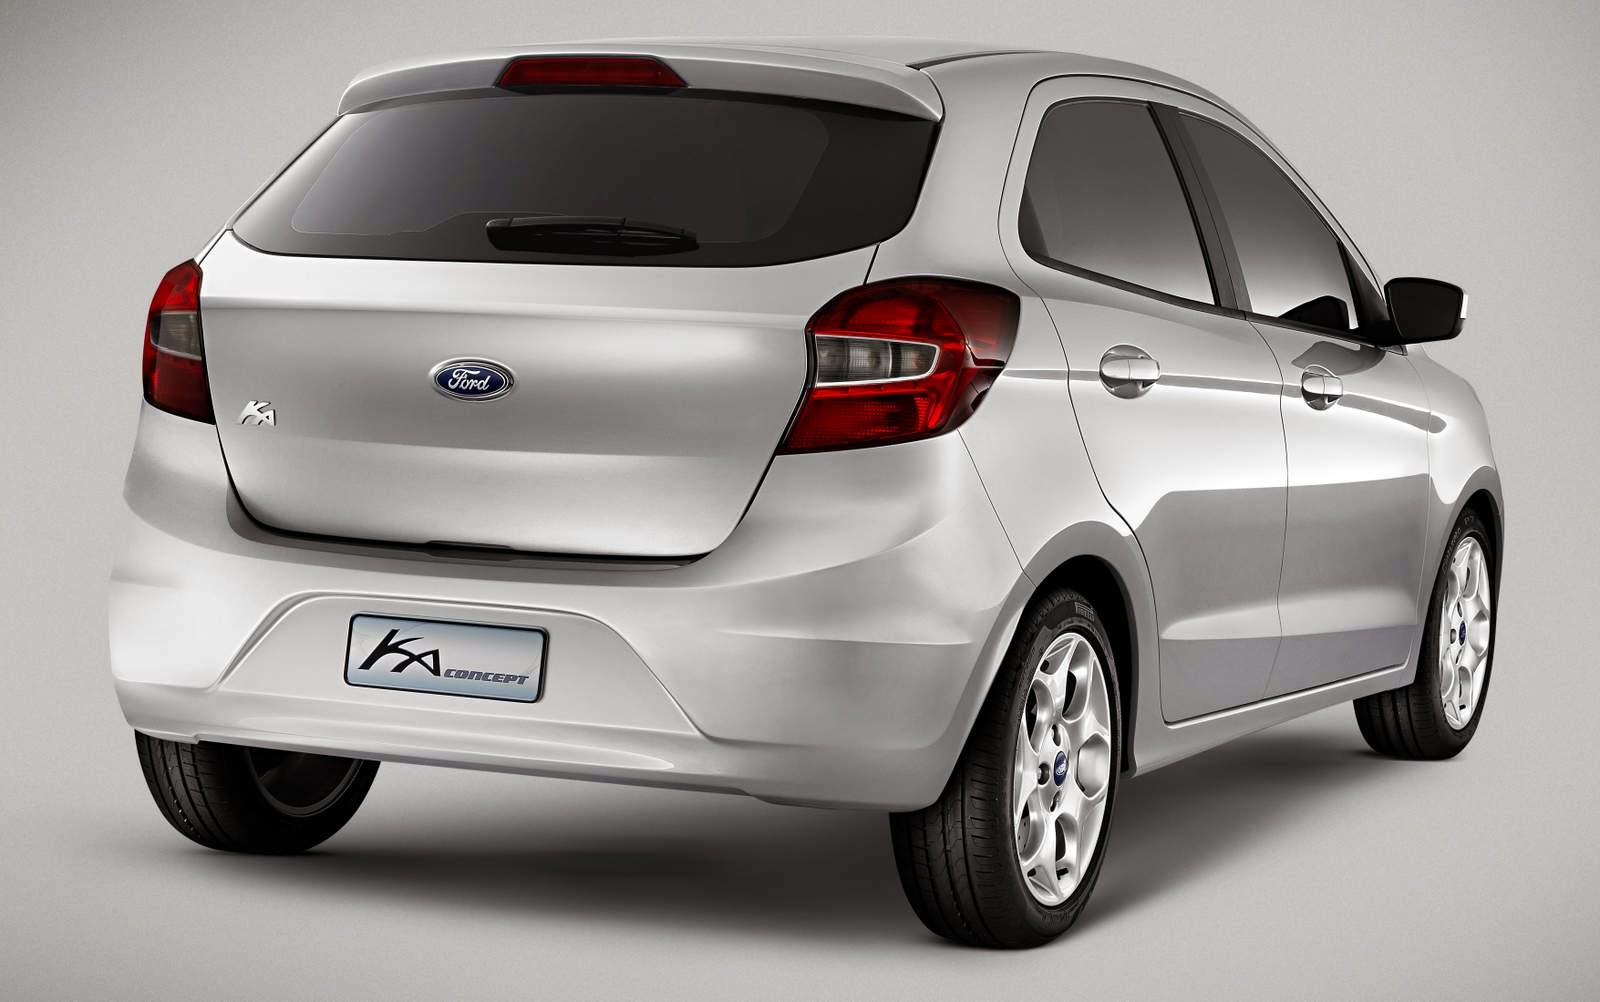 Novo Ford Ka 2014: fotos oficiais e informações | CAR.BLOG.BR